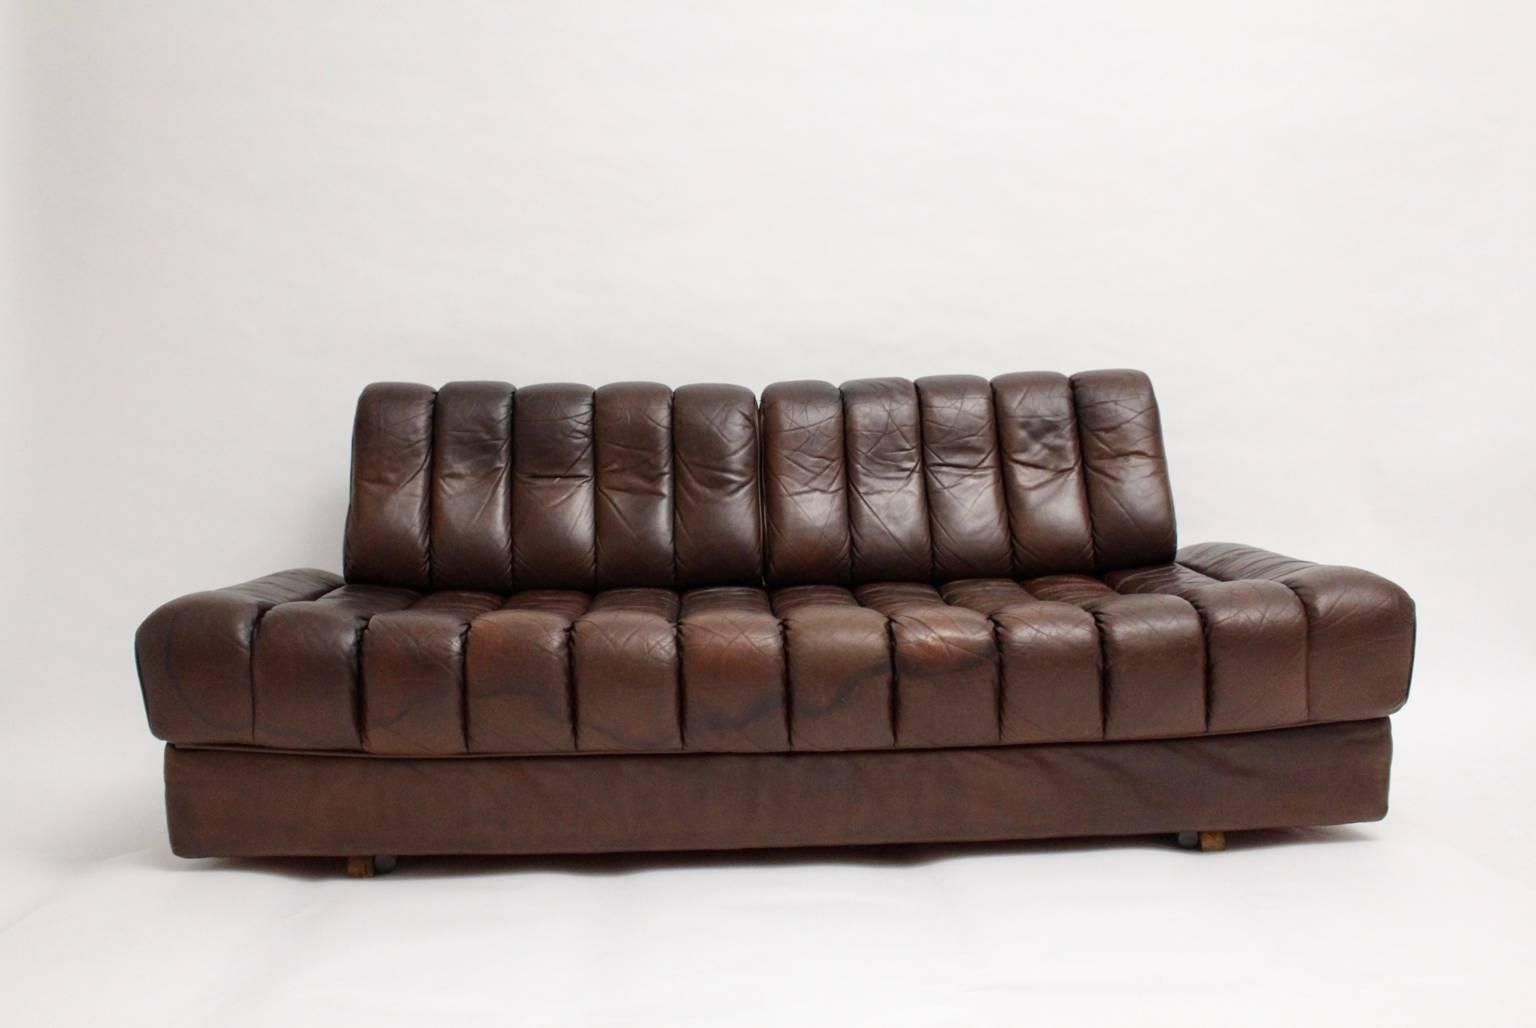 De Sede DS 85 Brown Leather Daybed or Sofa 1970s, Switzerland (Schweizerisch)